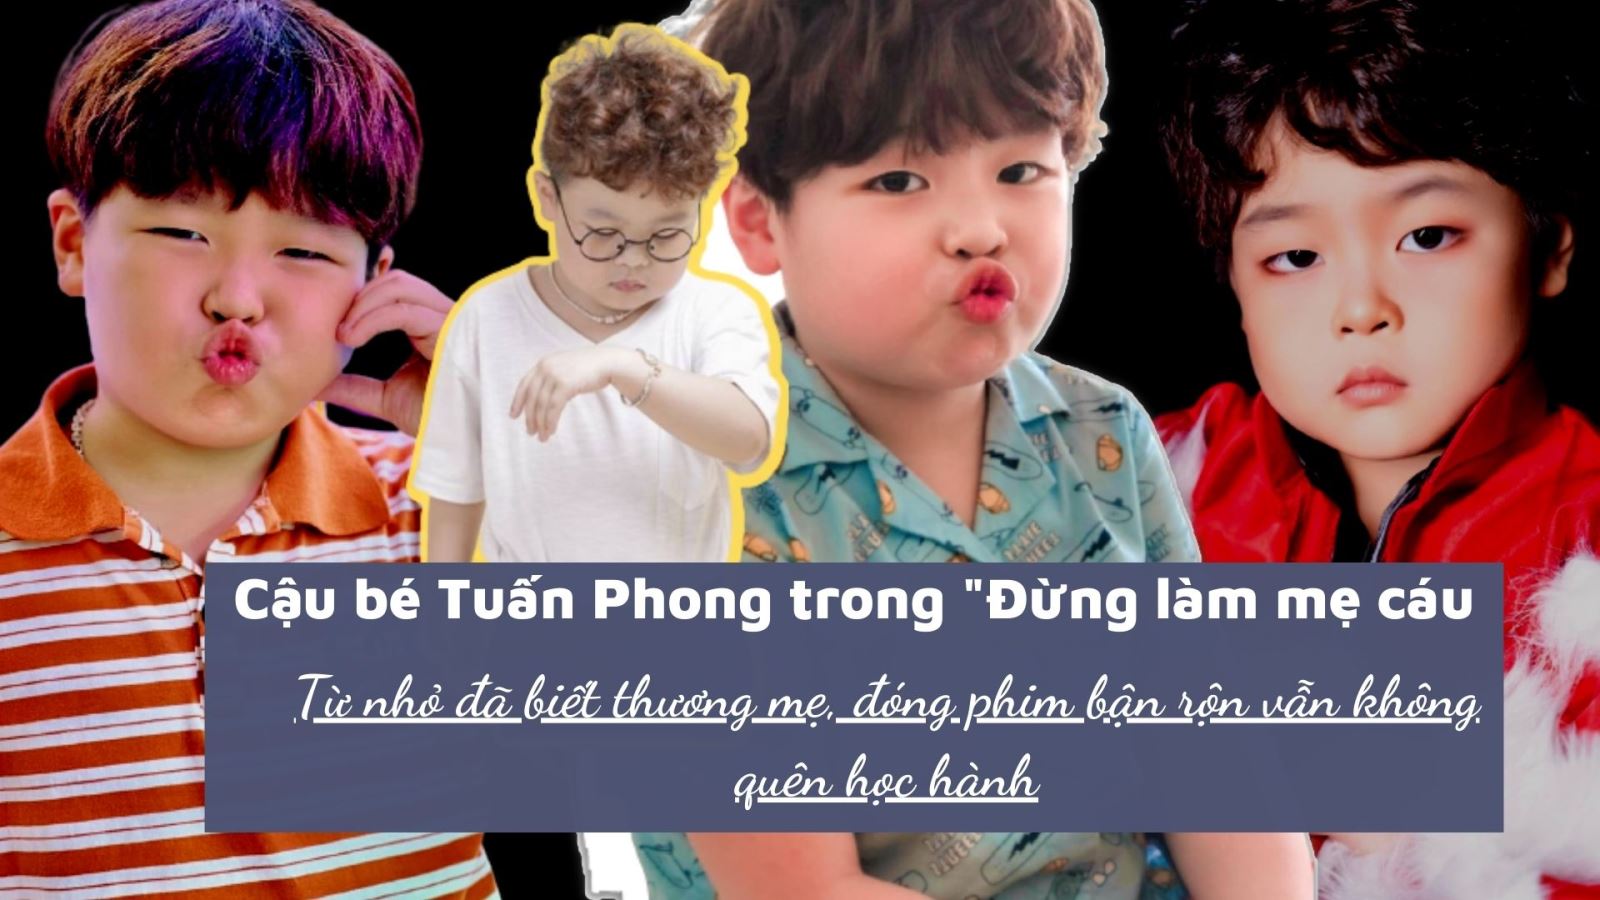 Cậu bé Tuấn Phong trong "Đừng làm mẹ cáu": Từ nhỏ đã biết thương mẹ, đóng phim bận rộn vẫn không quên học hành